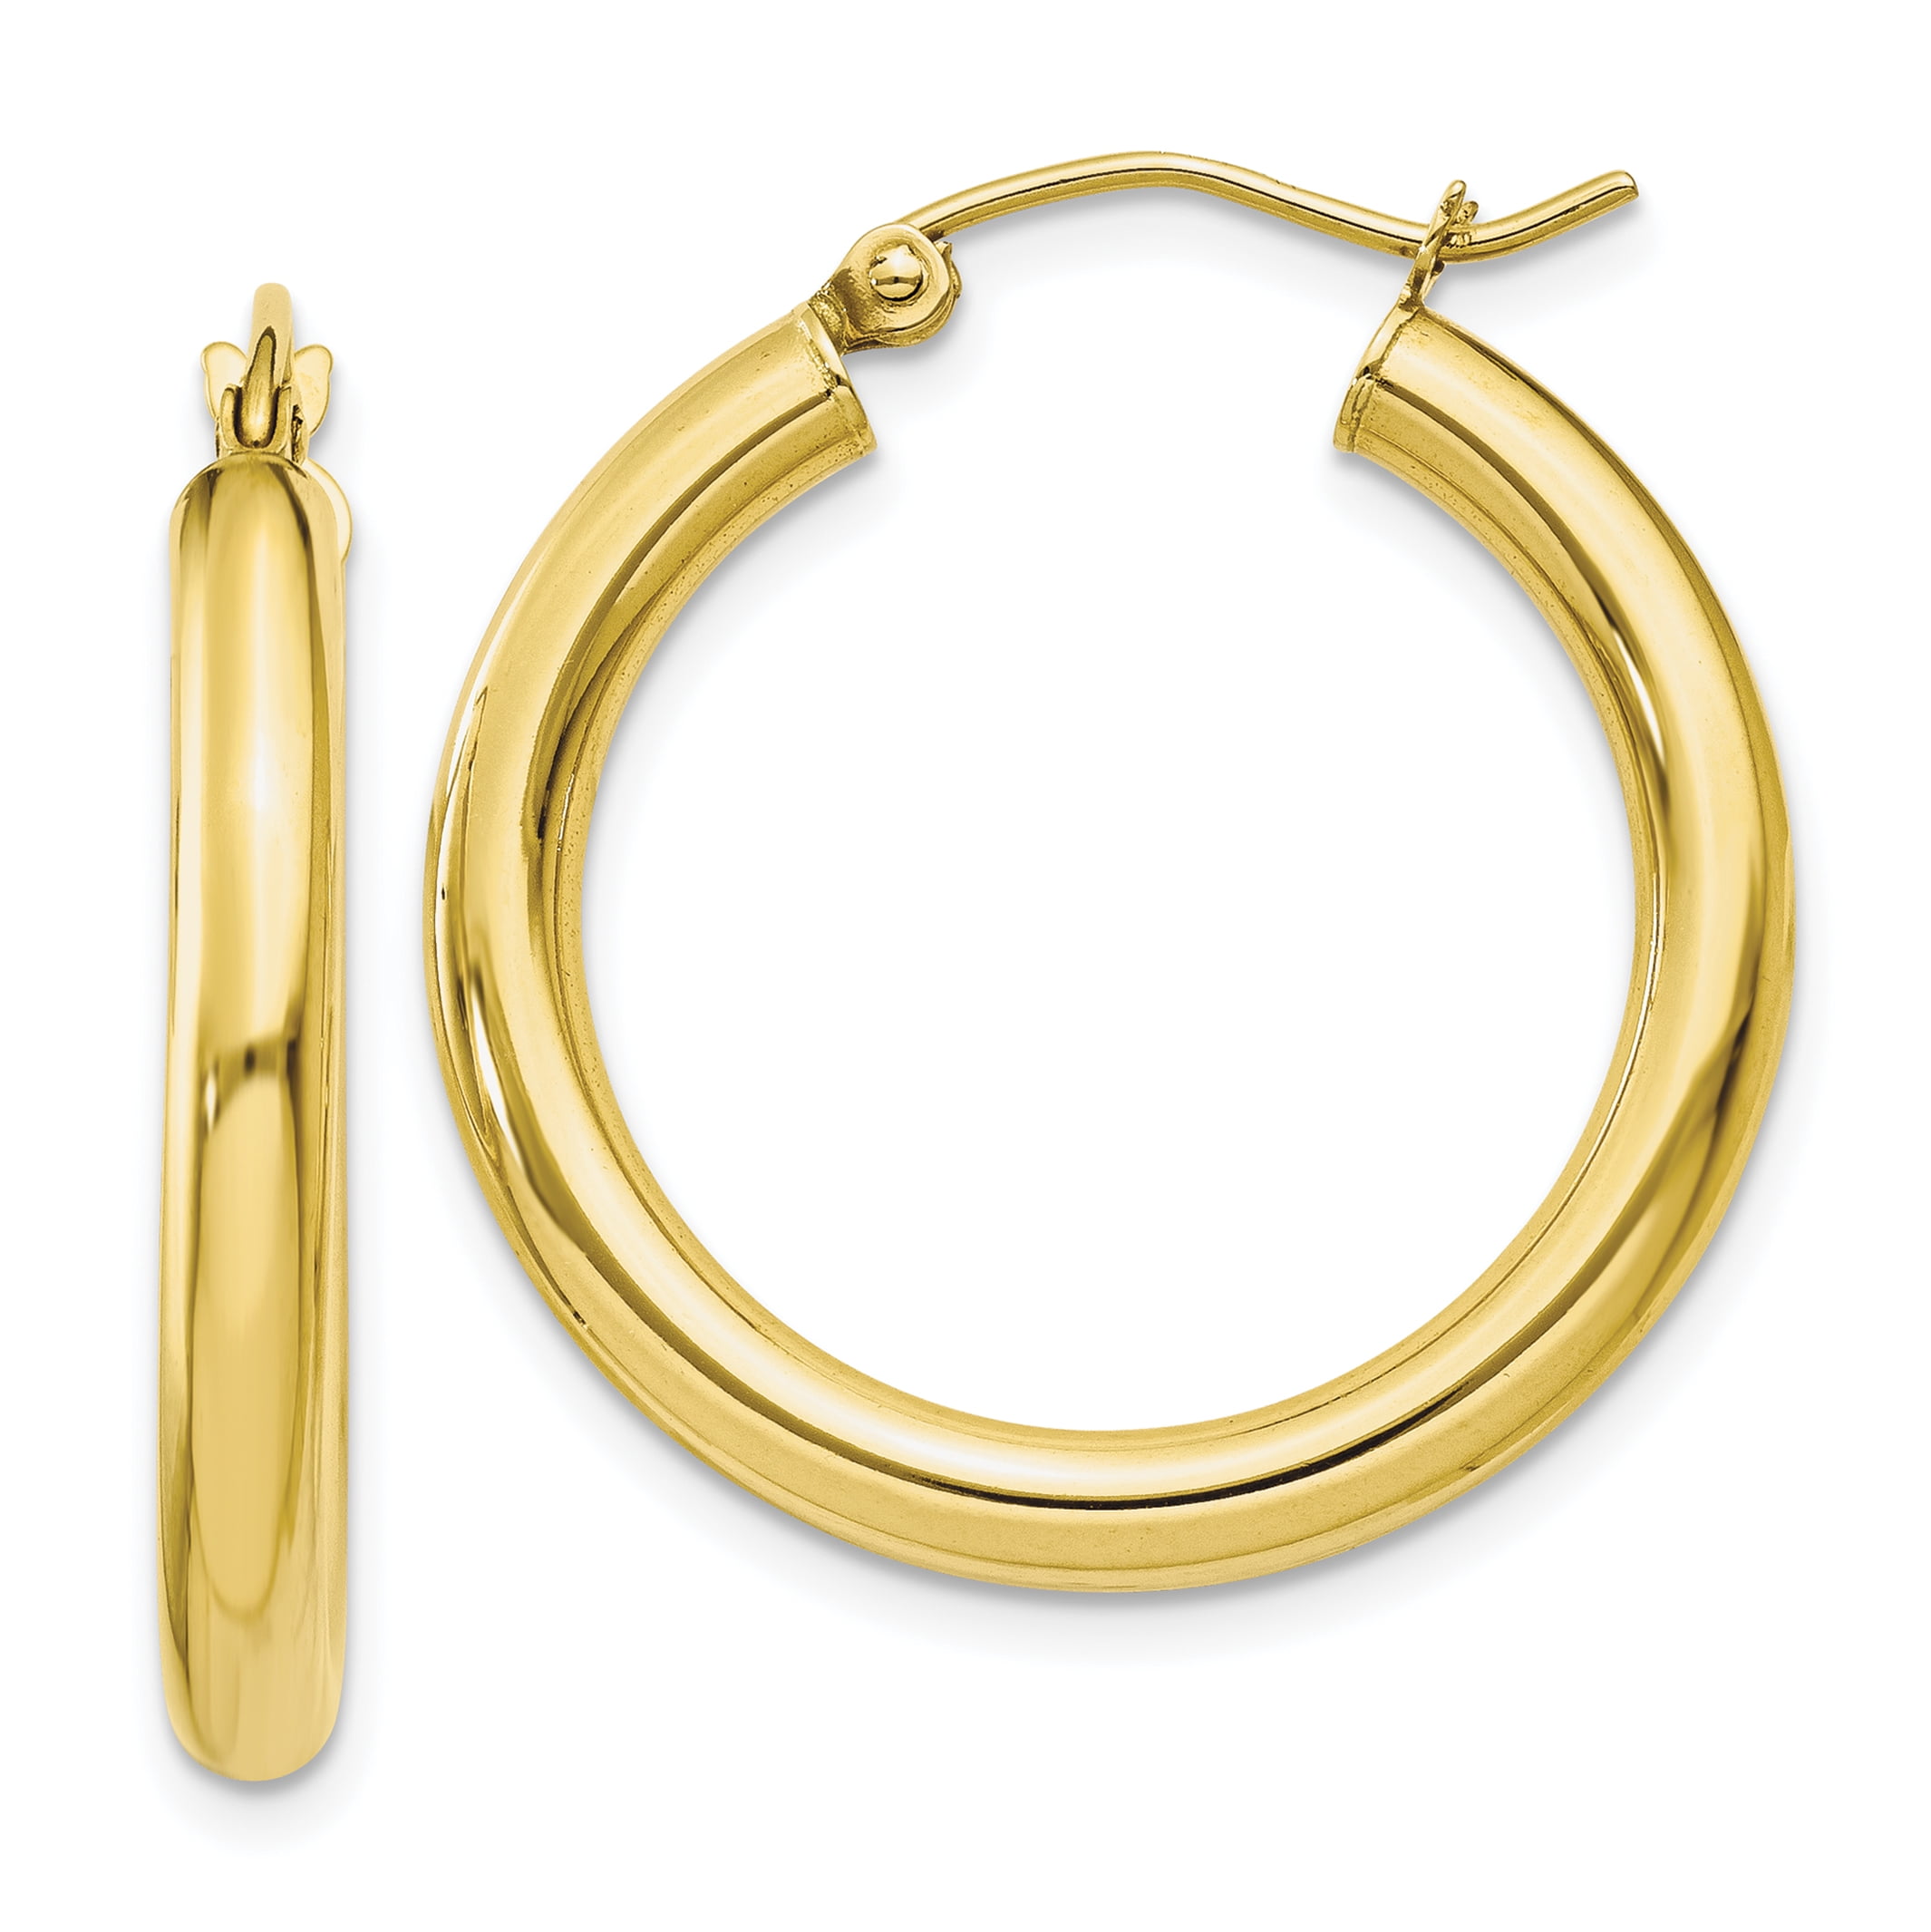 3mm x 20mm Solid 14k White Gold Square Tube Hoop Earrings